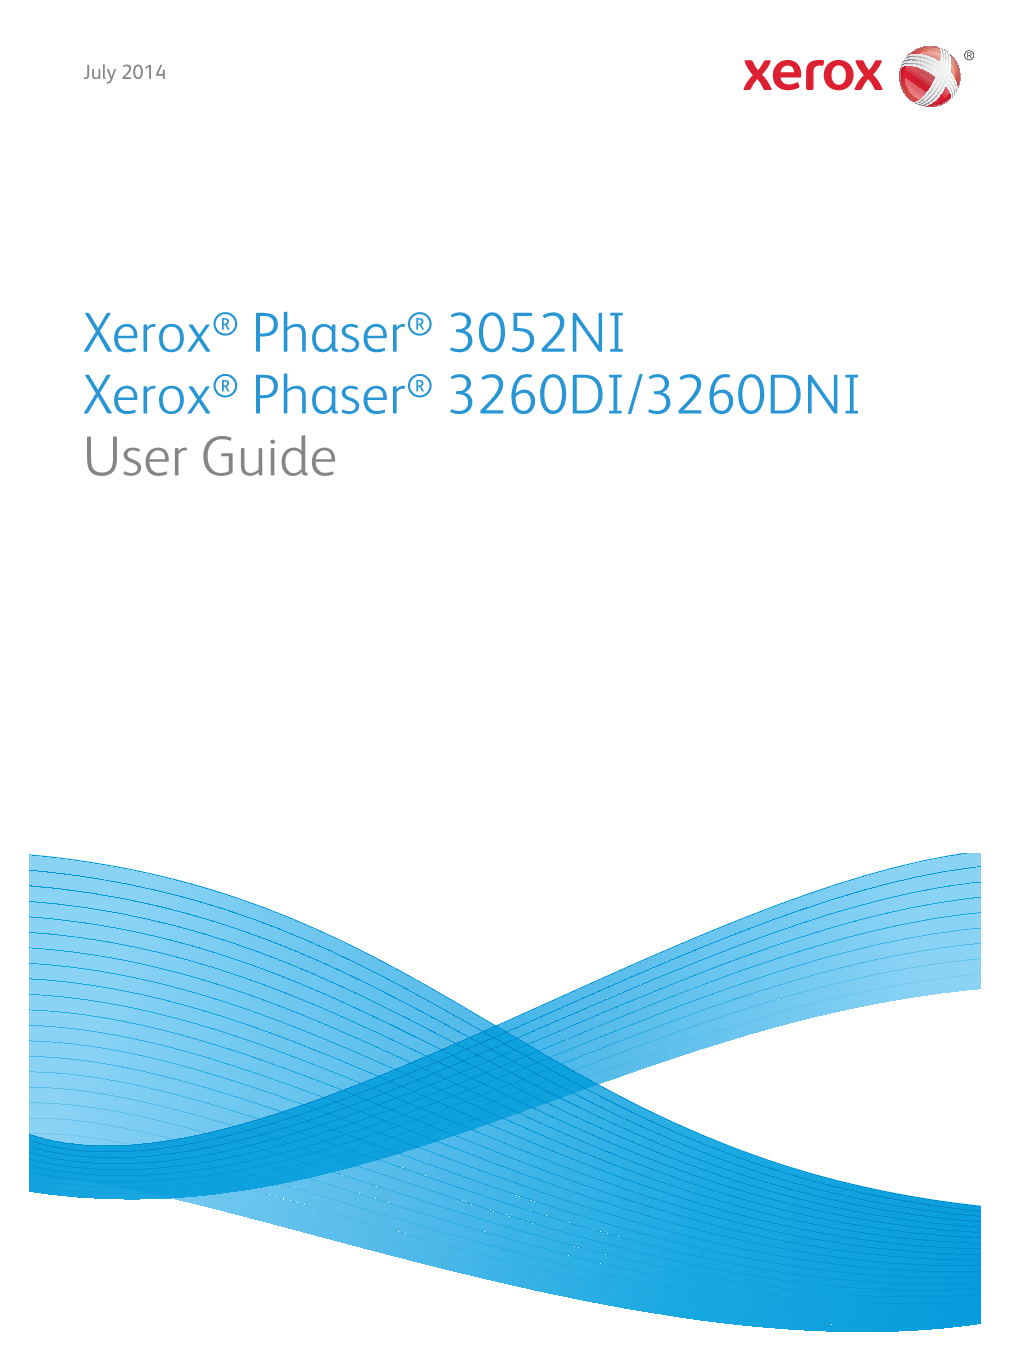 Phaser 3260 User Guide